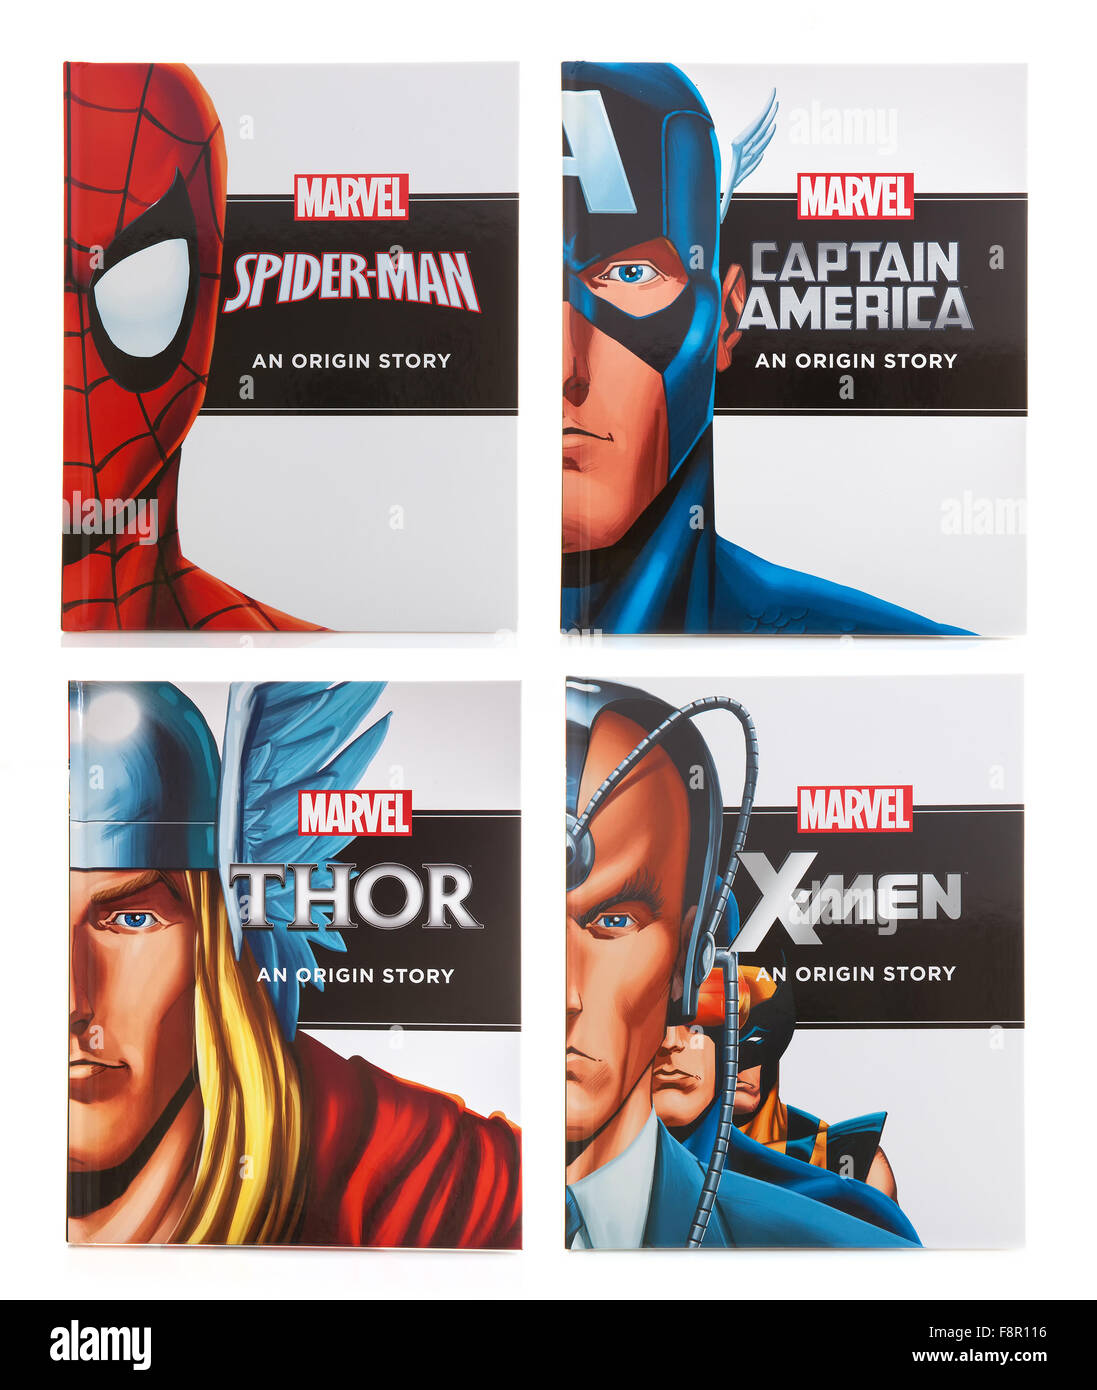 Quatre Marvel Super Hero Books "Provenance" de l'histoire sur un fond blanc Banque D'Images